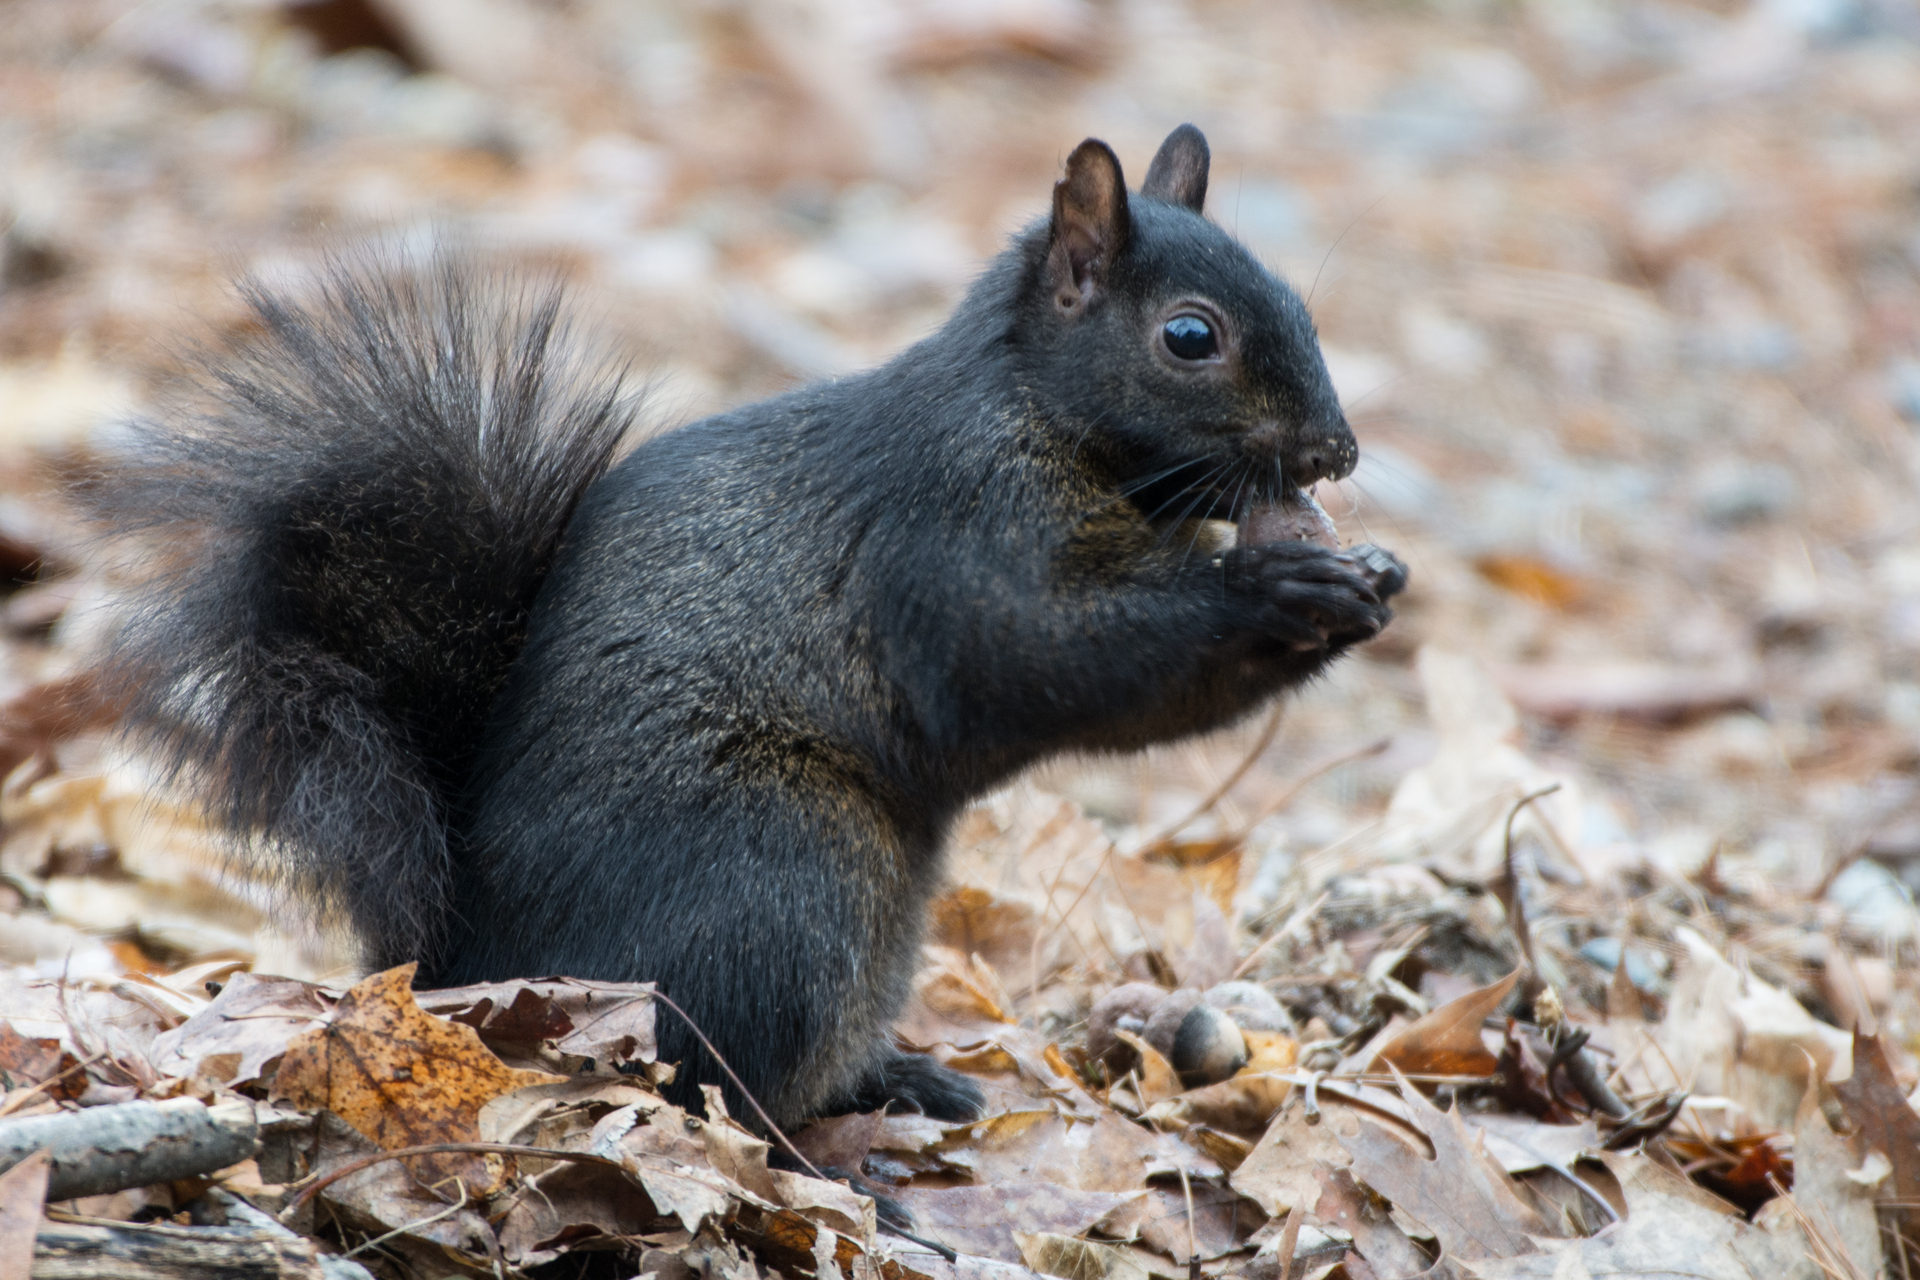 A black squirrel eating an acorn.